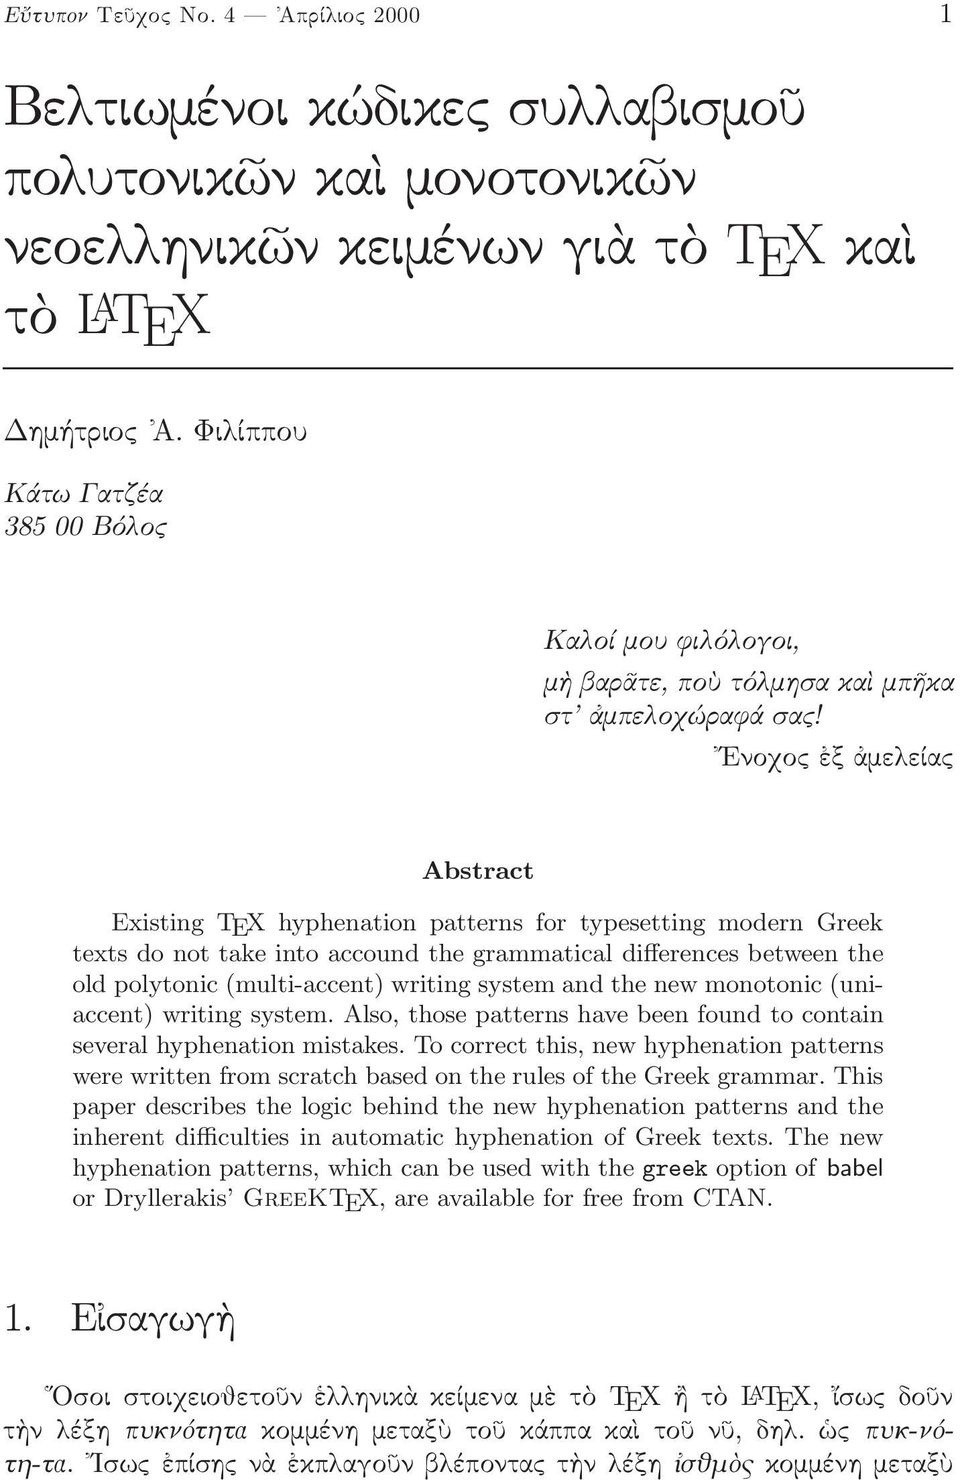 Ενοχος ἐξ ἀμελείας Abstract Existing TEX hyphenation patterns for typesetting modern Greek texts do not take into accound the grammatical differences between the old polytonic (multi-accent) writing